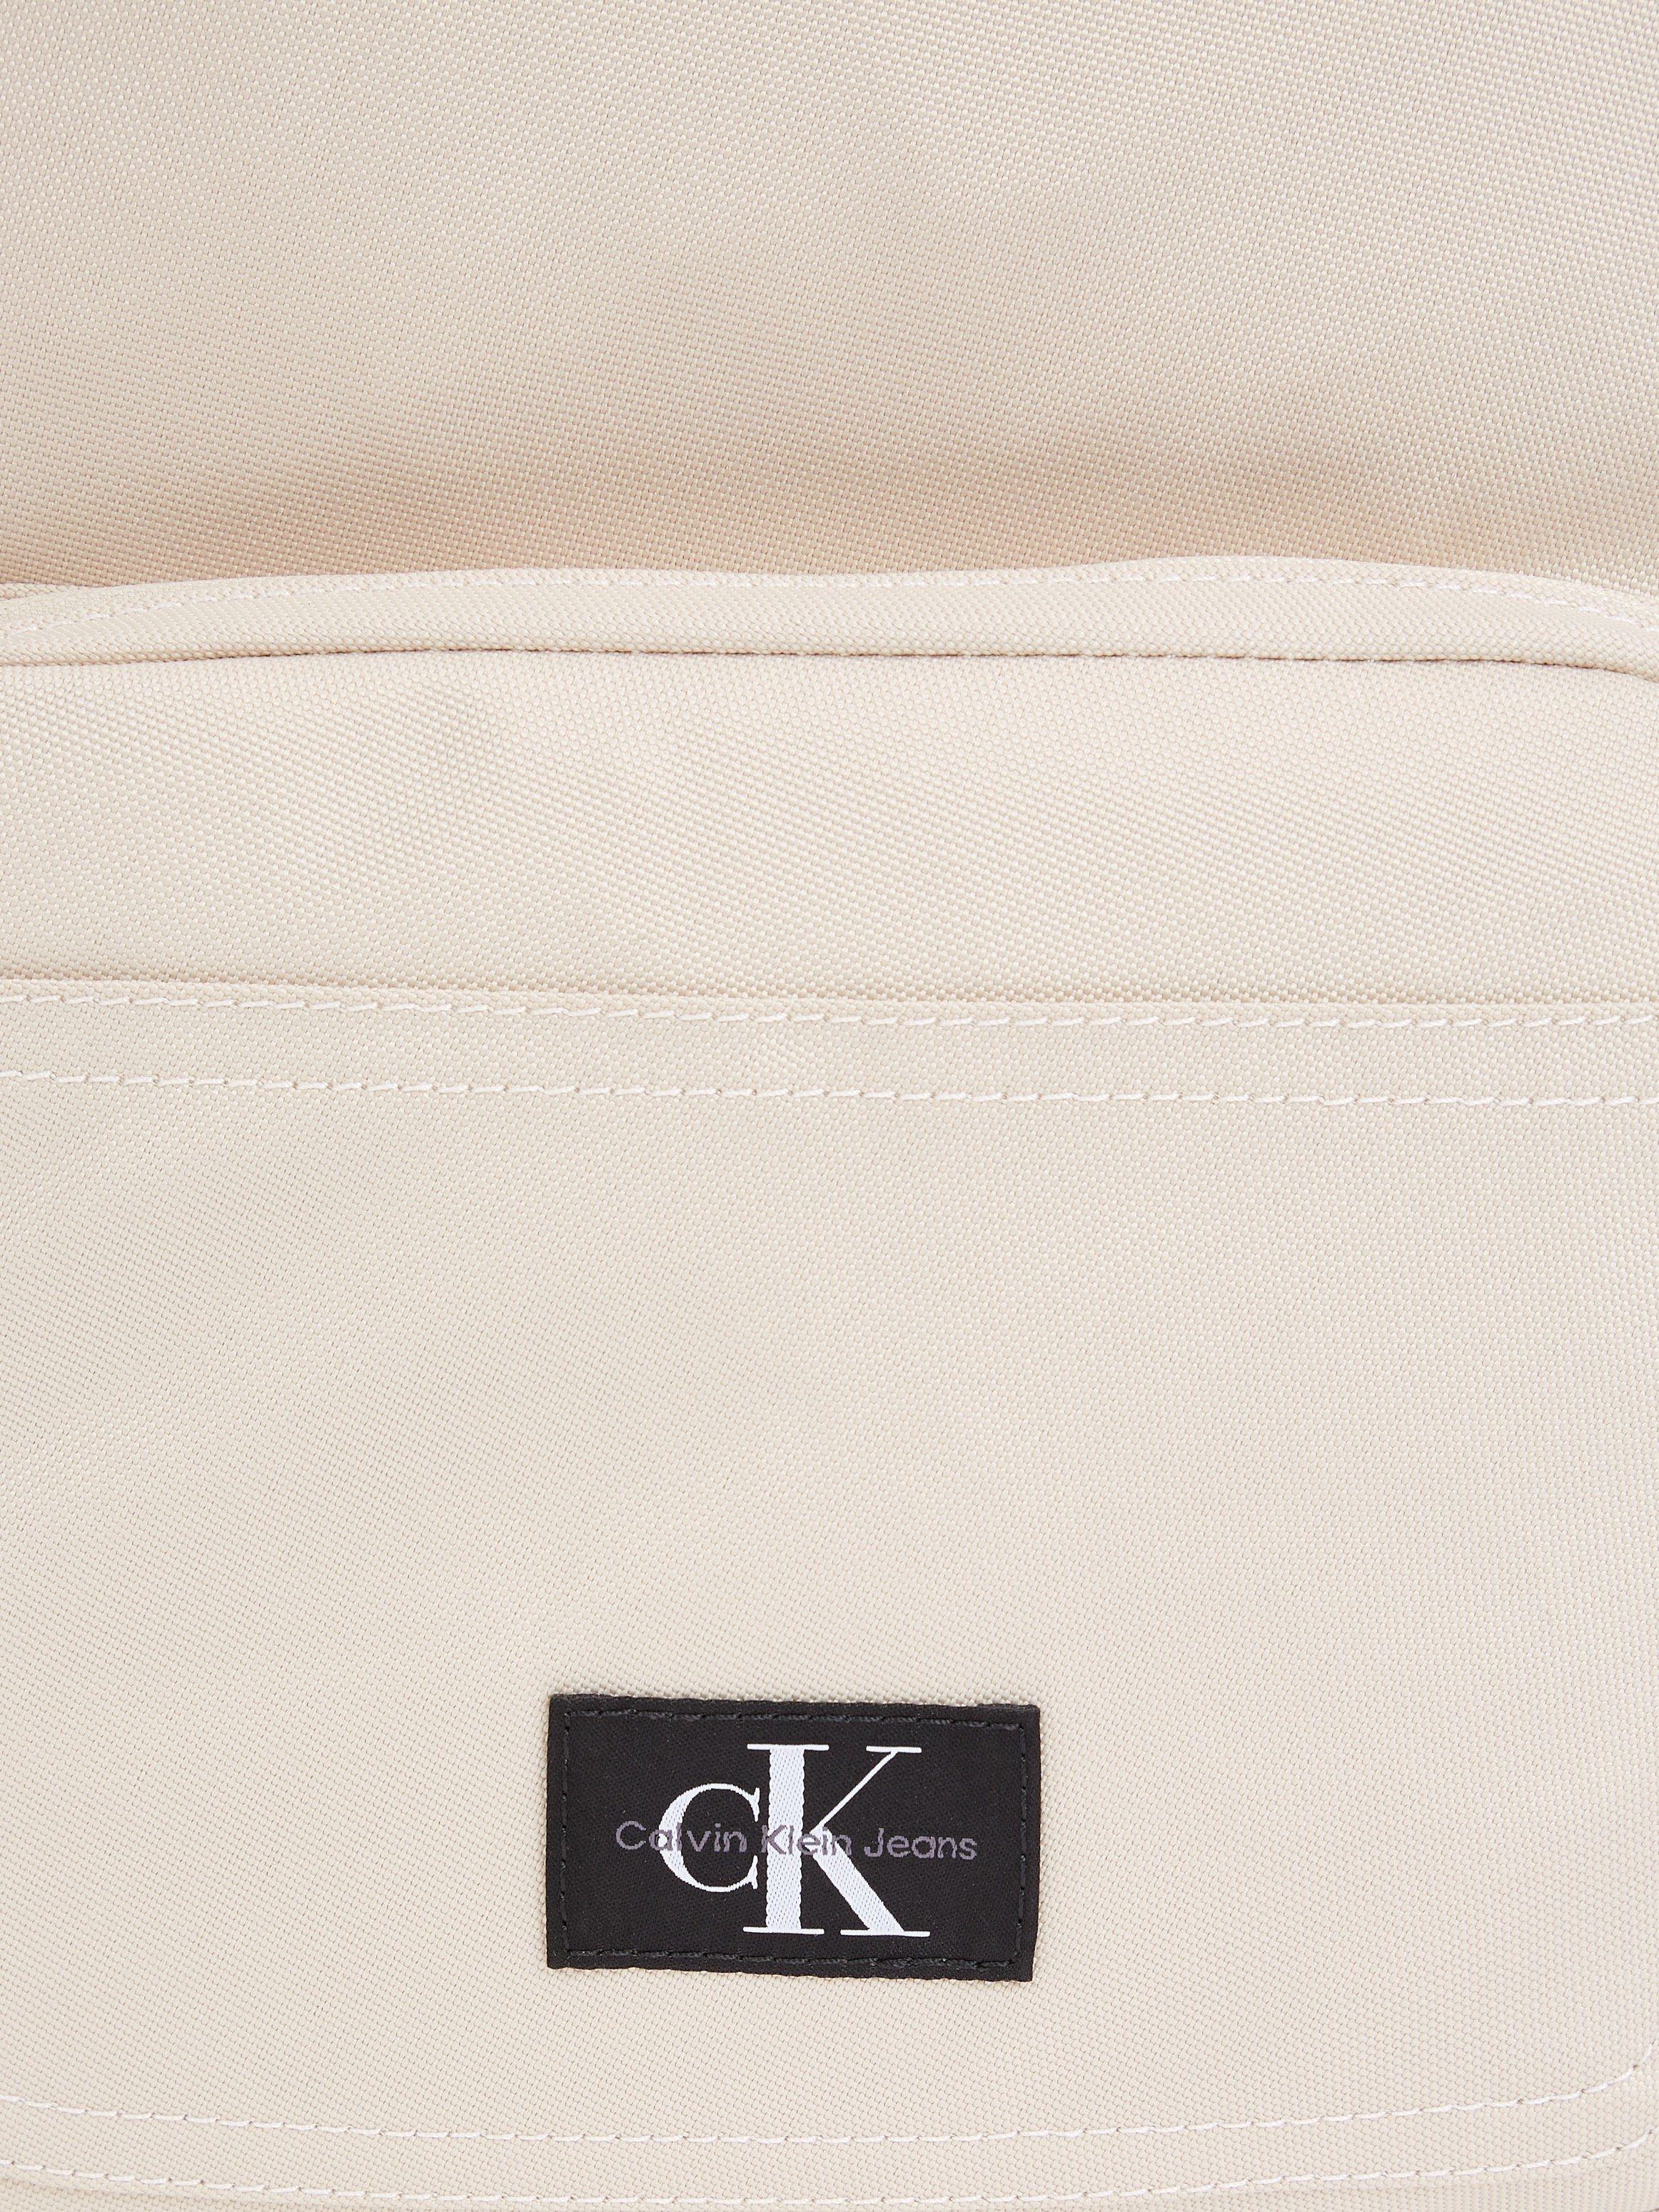 Calvin Klein Jeans Cityrucksack beige Design CAMPUS dezentem SPORT in W, ESSENTIALS BP40